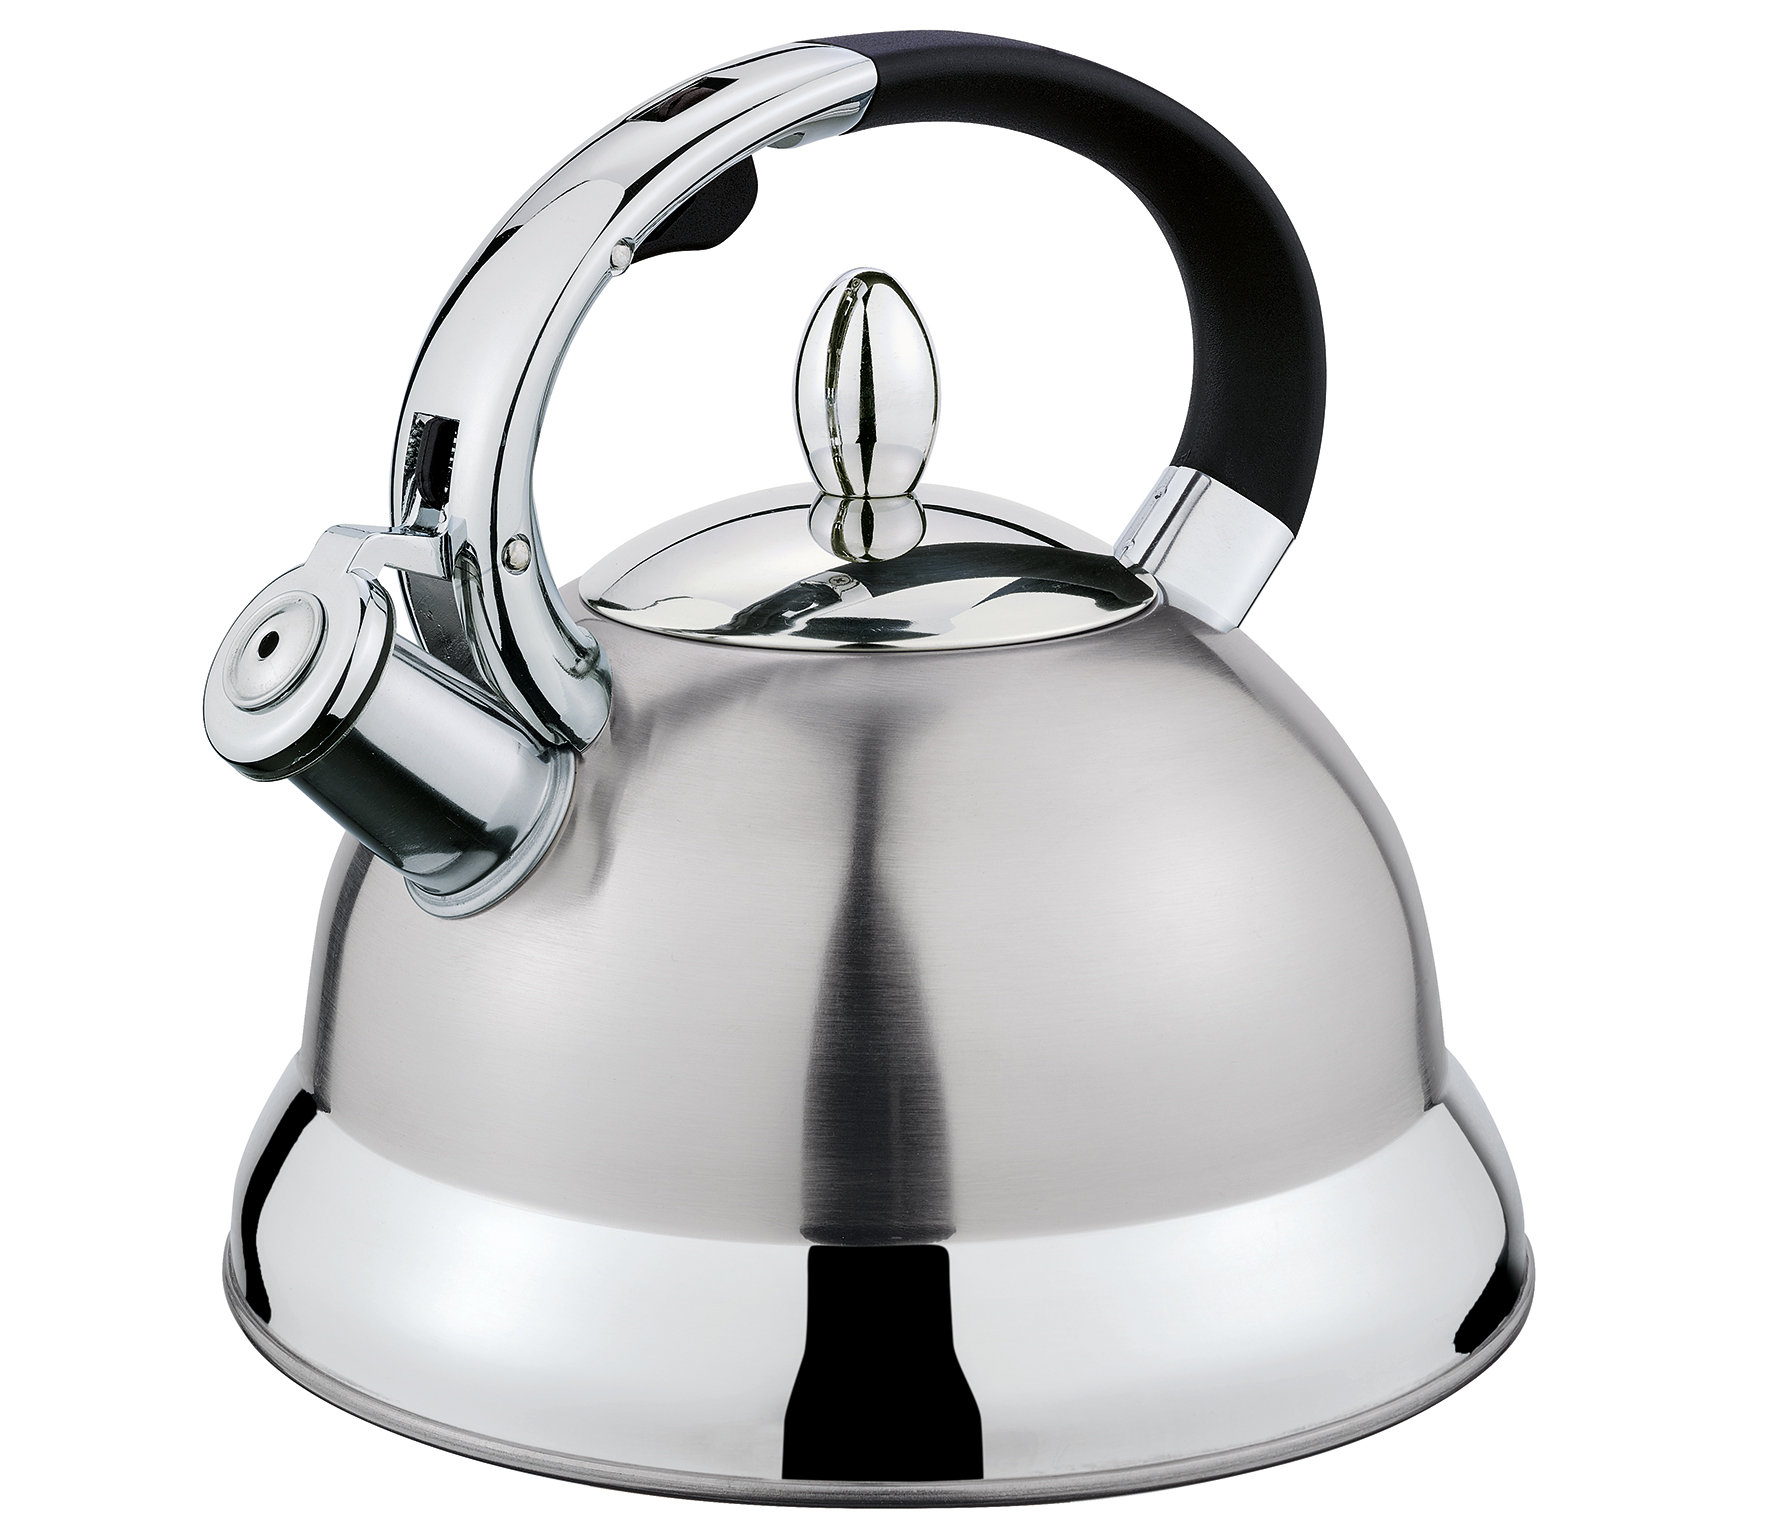  Farberware Teakettles Stainless Steel Egg-Shaped Whistling Tea  Kettle, 2.3 Quart, Silver: Home & Kitchen